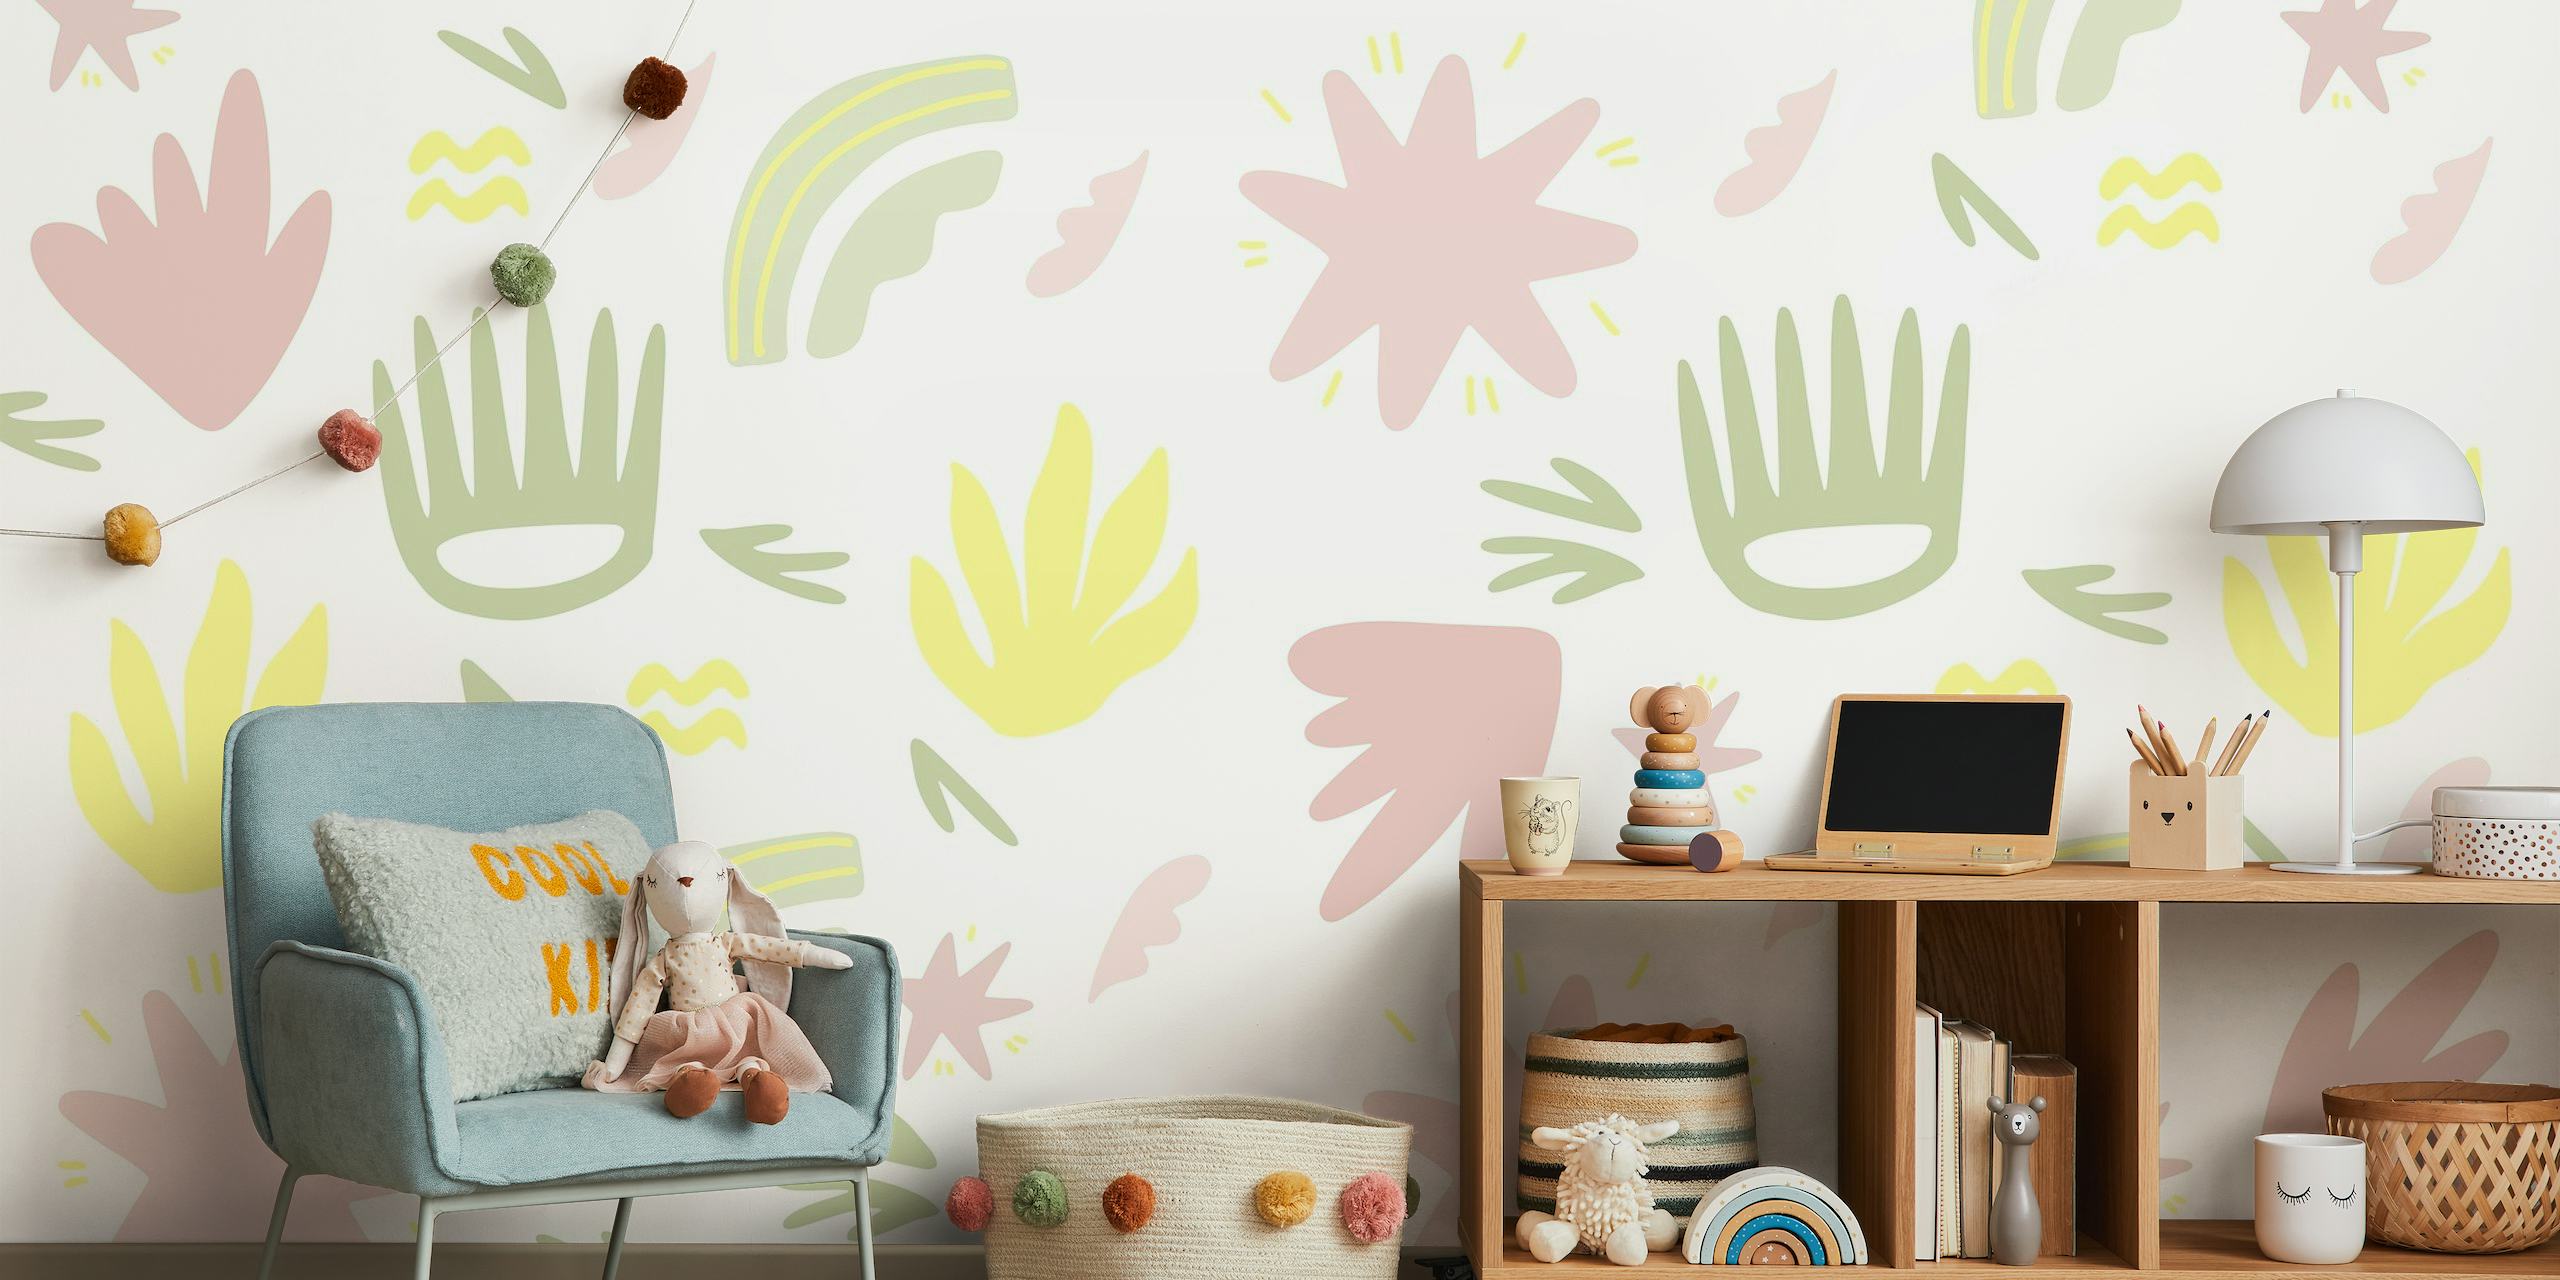 Muurschildering in handgetekende stijl met pastelgele, roze en groene botanische elementen